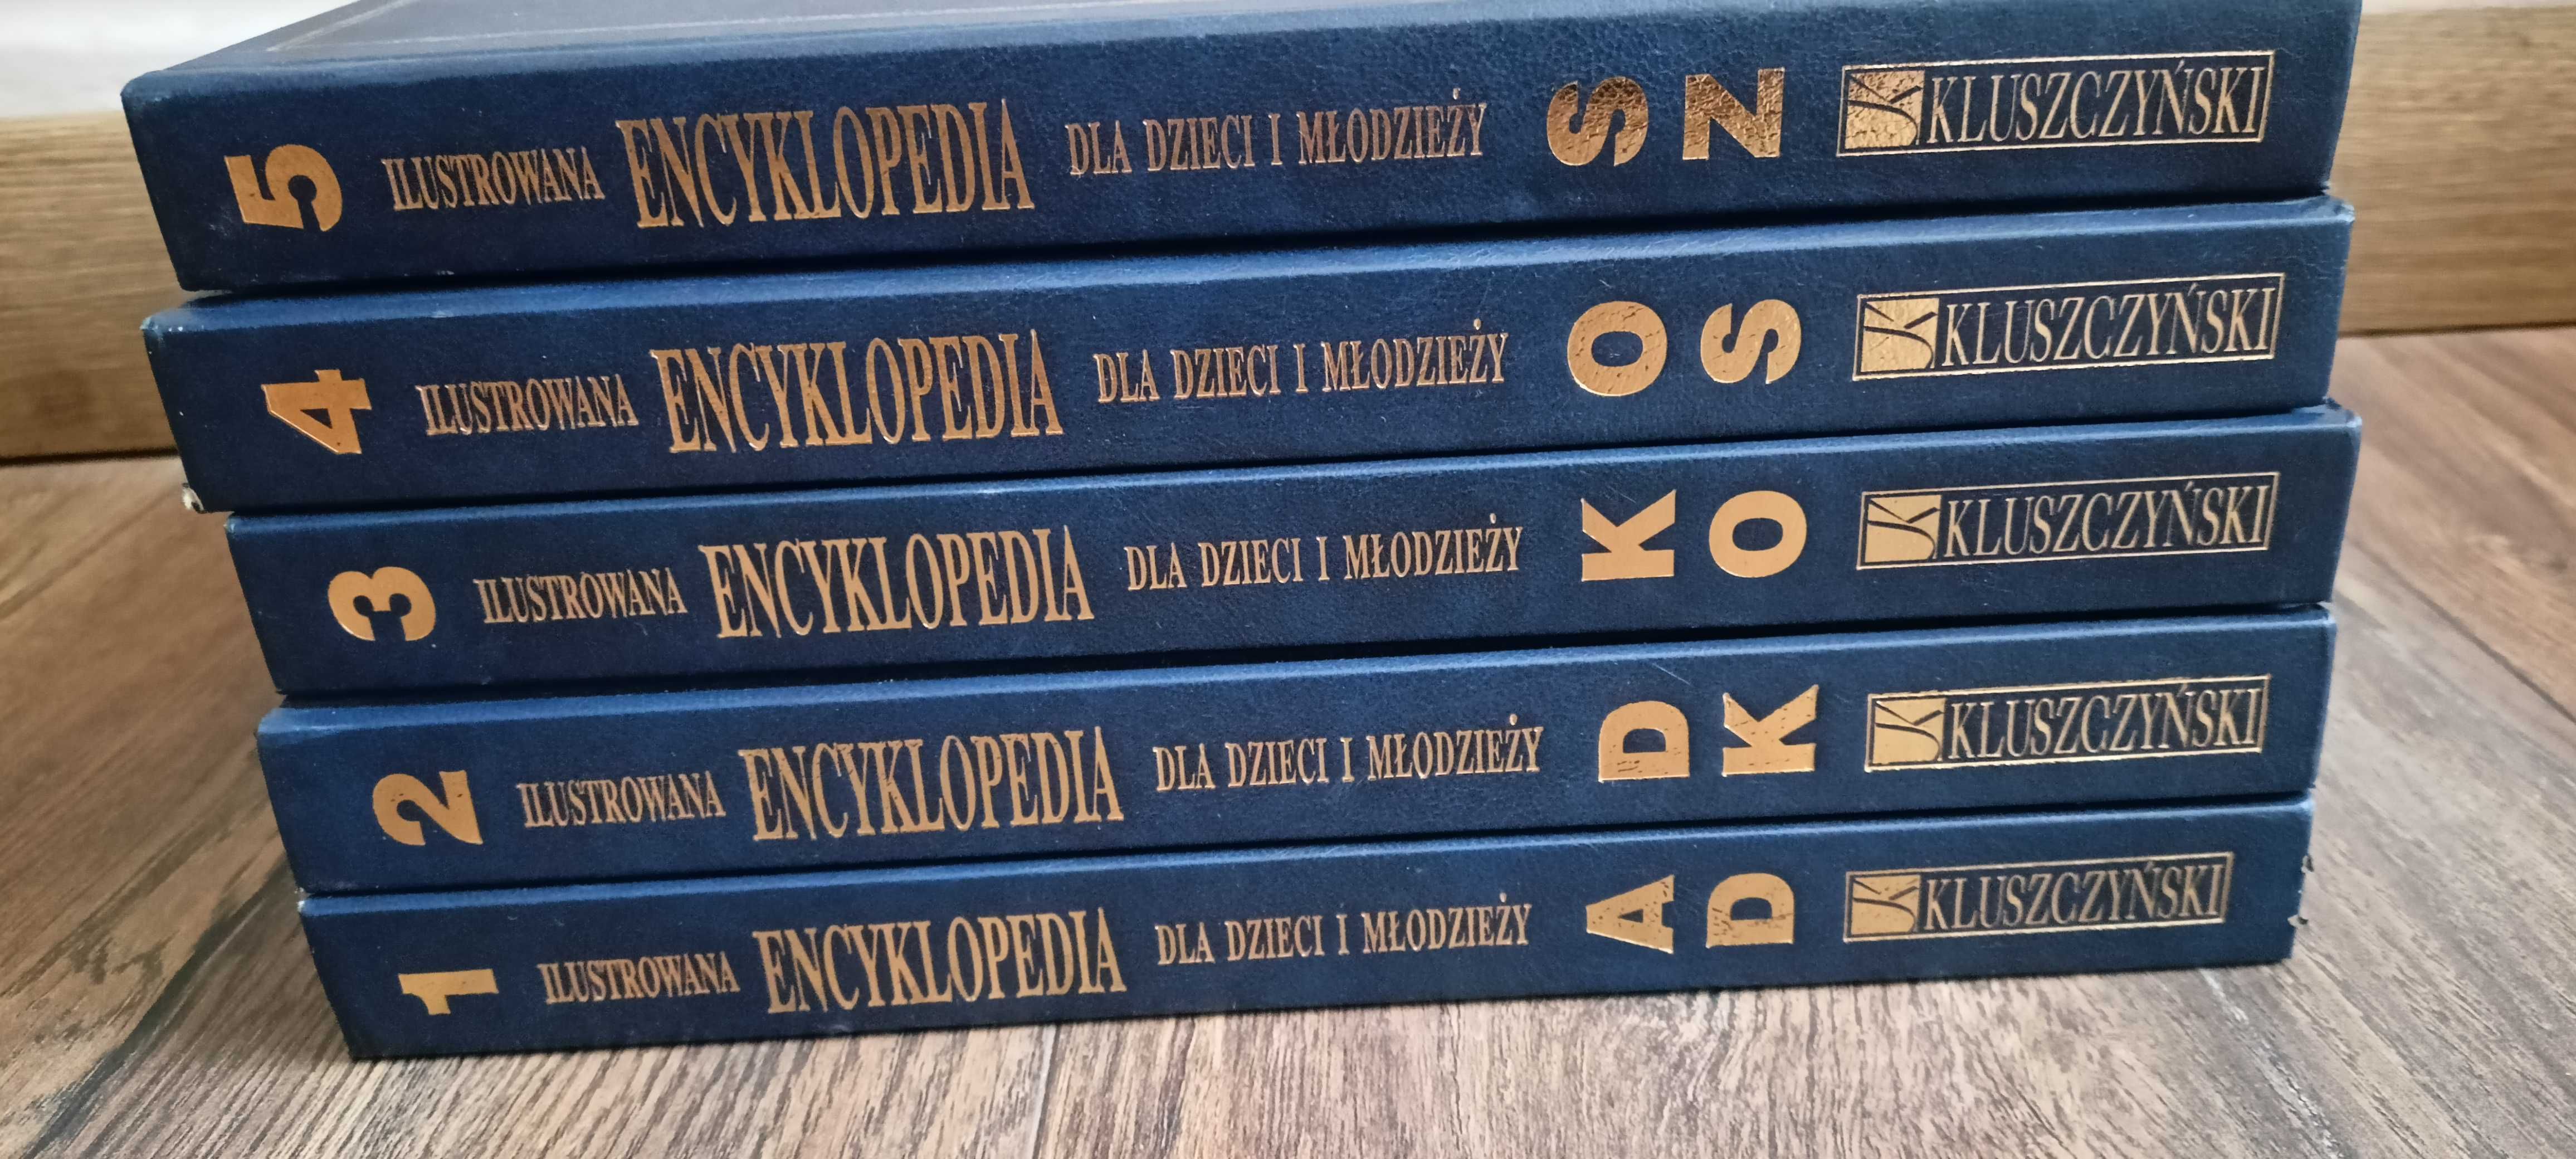 Książki encyklopedia